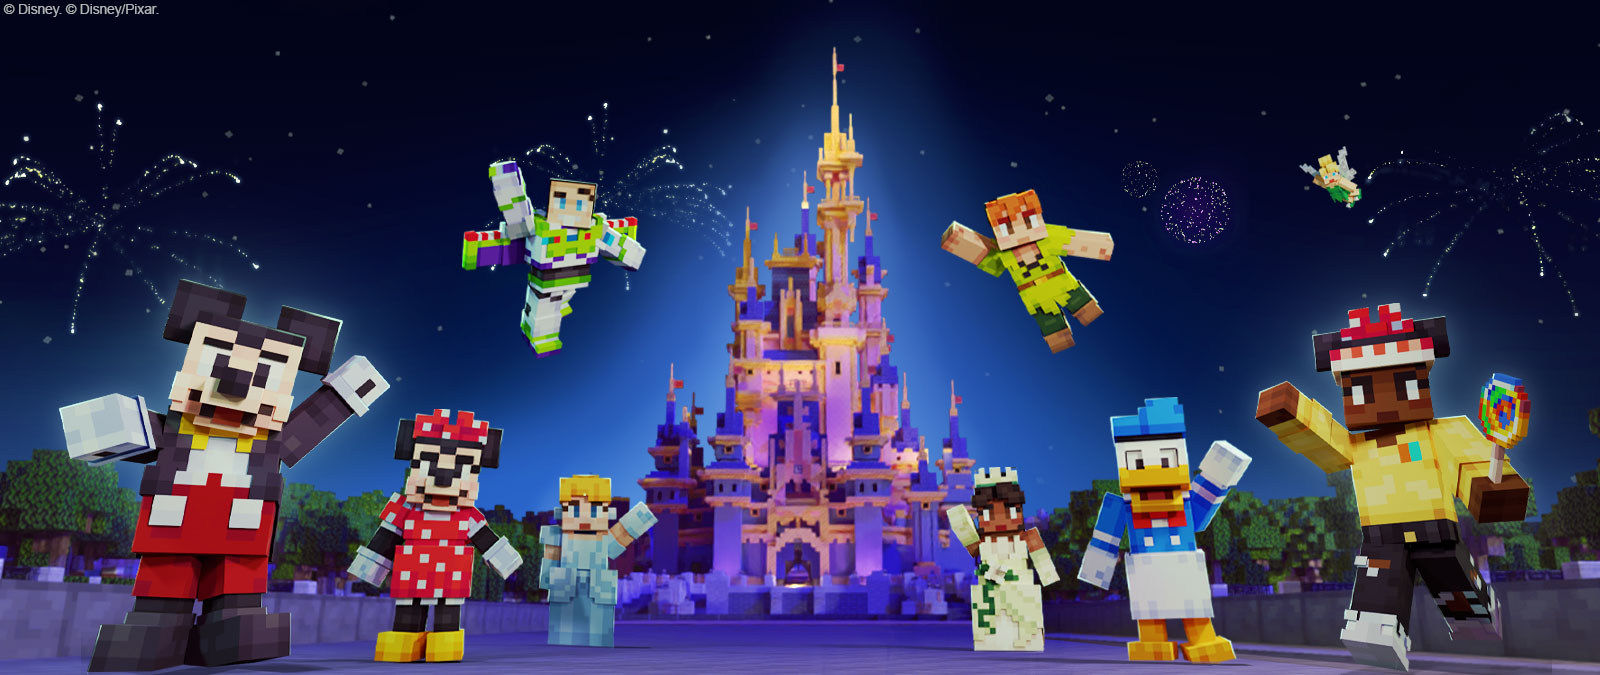 Mikki Hiiri, Minni Hiiri, Buzz Lightyear, Tuhkimo, Peter Pan, Tiana, Aku Ankka, Tinkerbell ja toinen Minecraft-tyyppinen hahmo Disney-linnan edessä